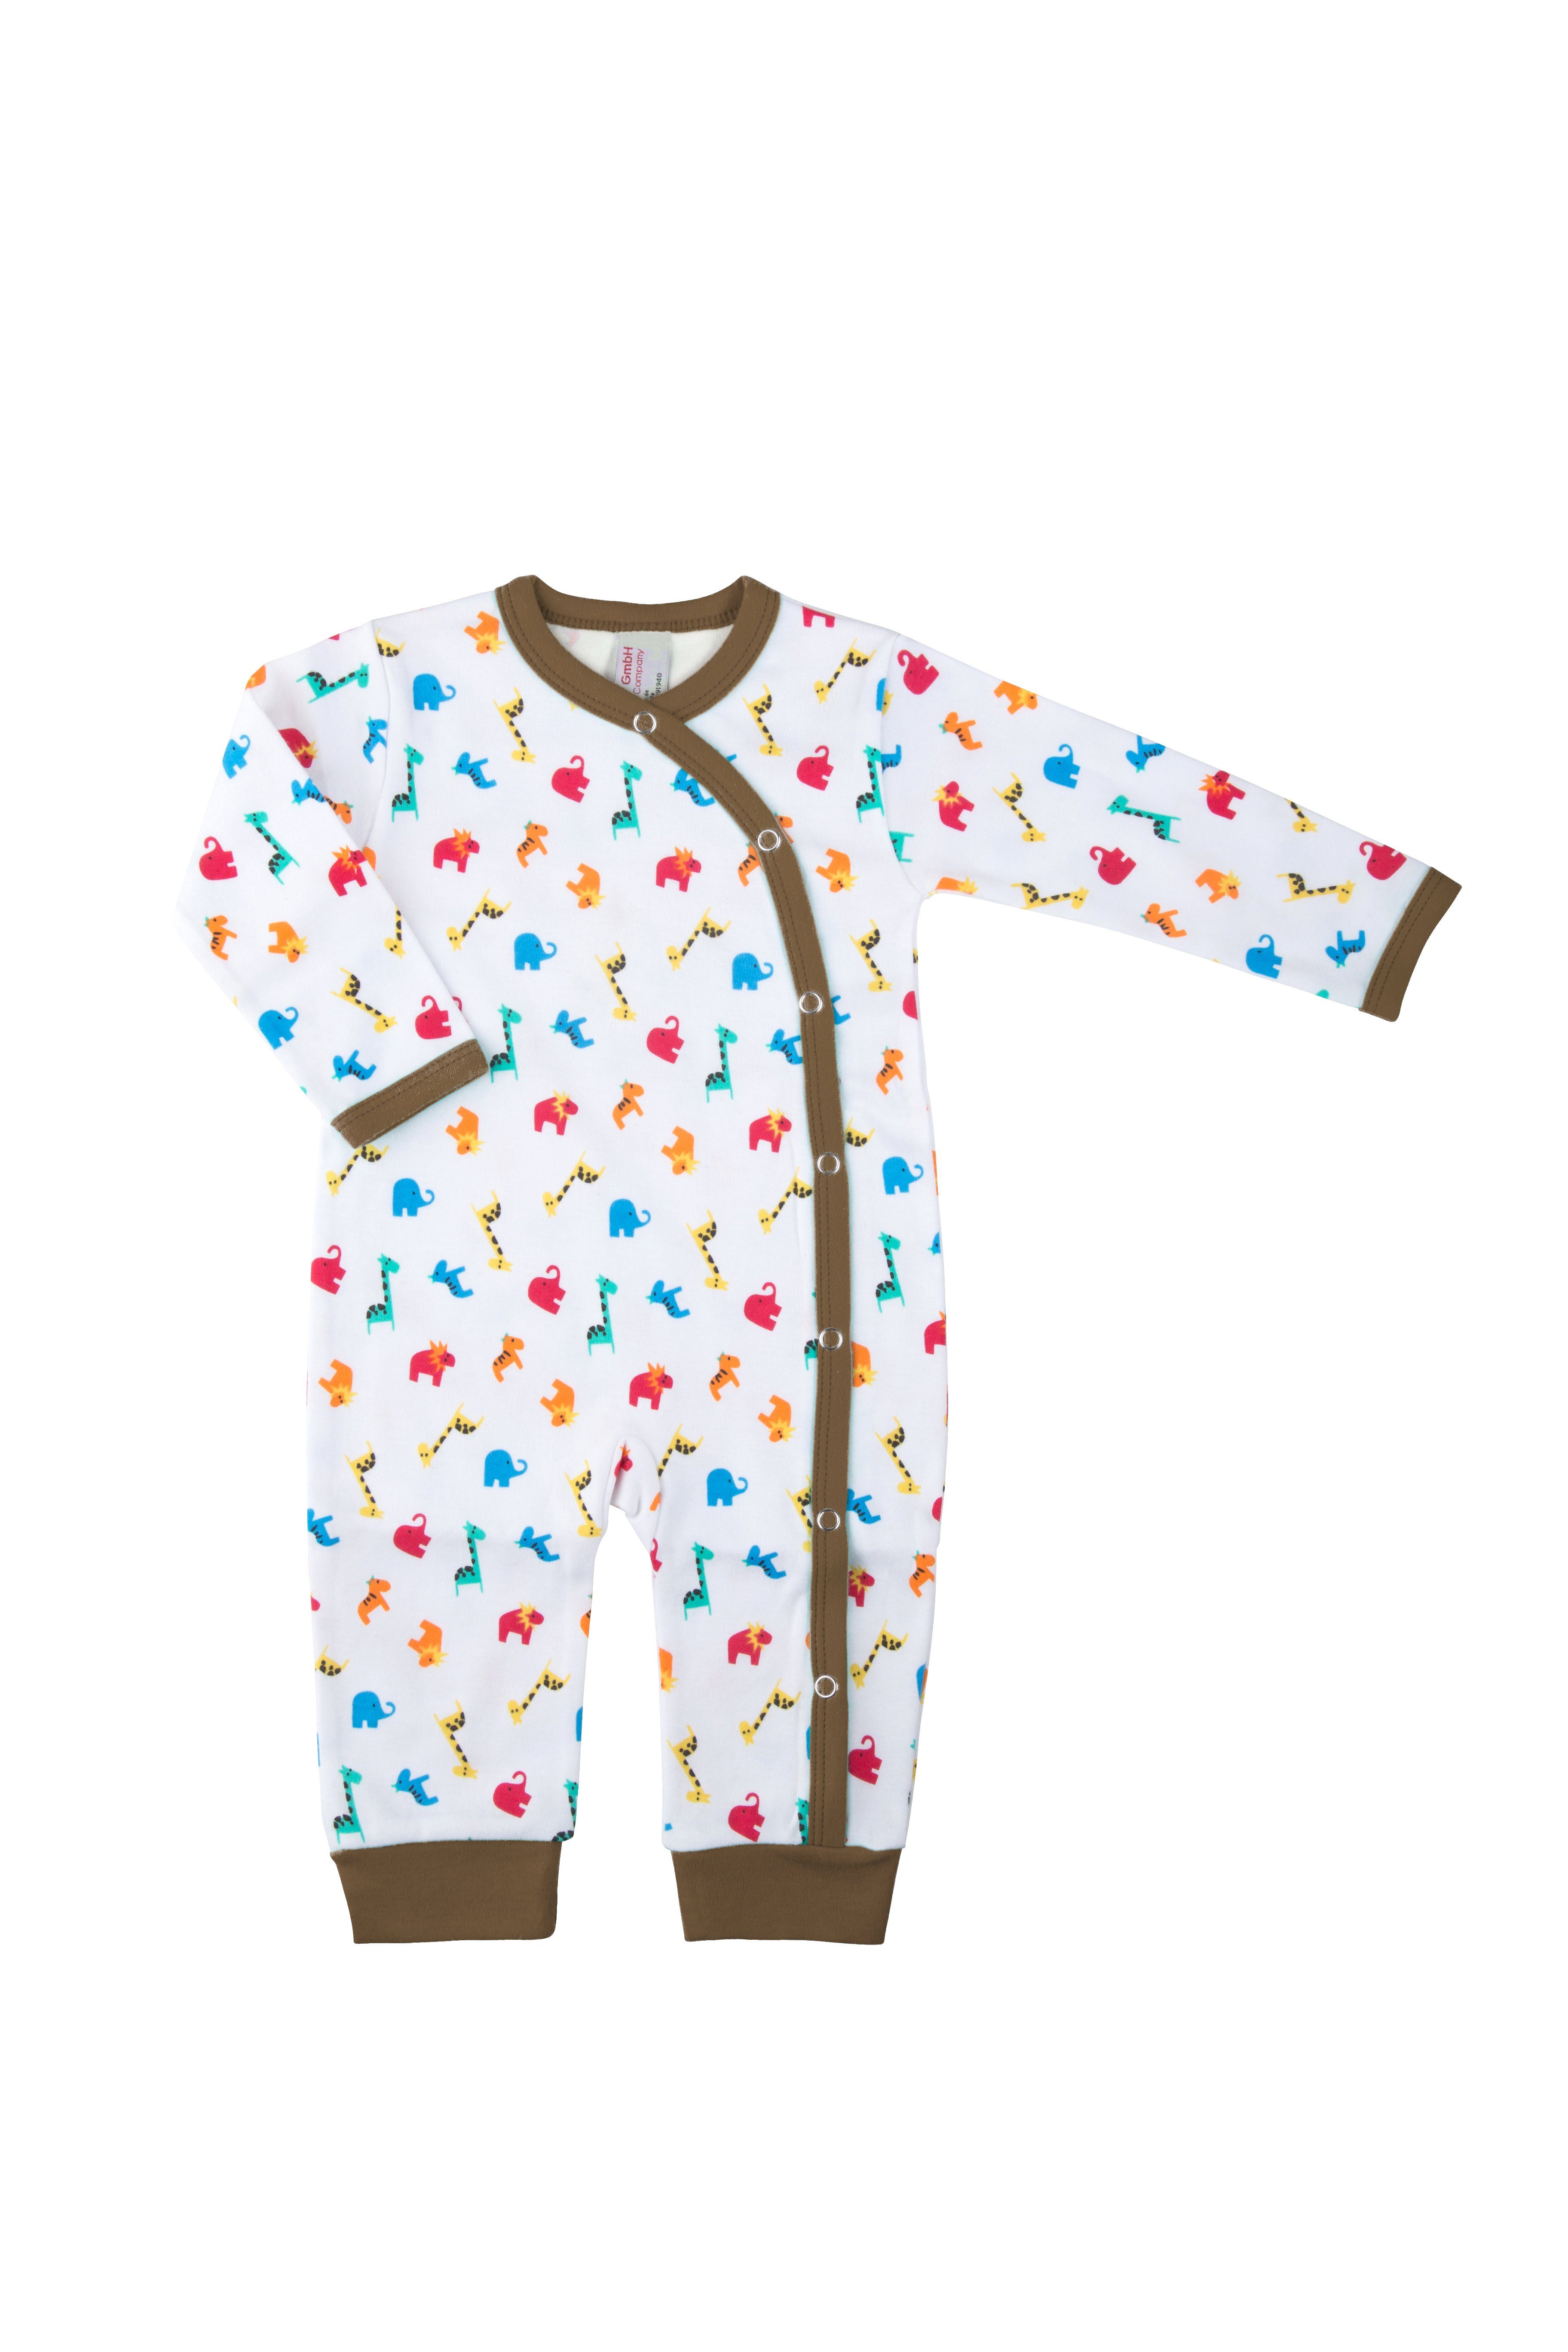 Schlafoverall Zootiere, Clinotest Druckknöpfe Braun Jersey, aus Baby Schlafanzug